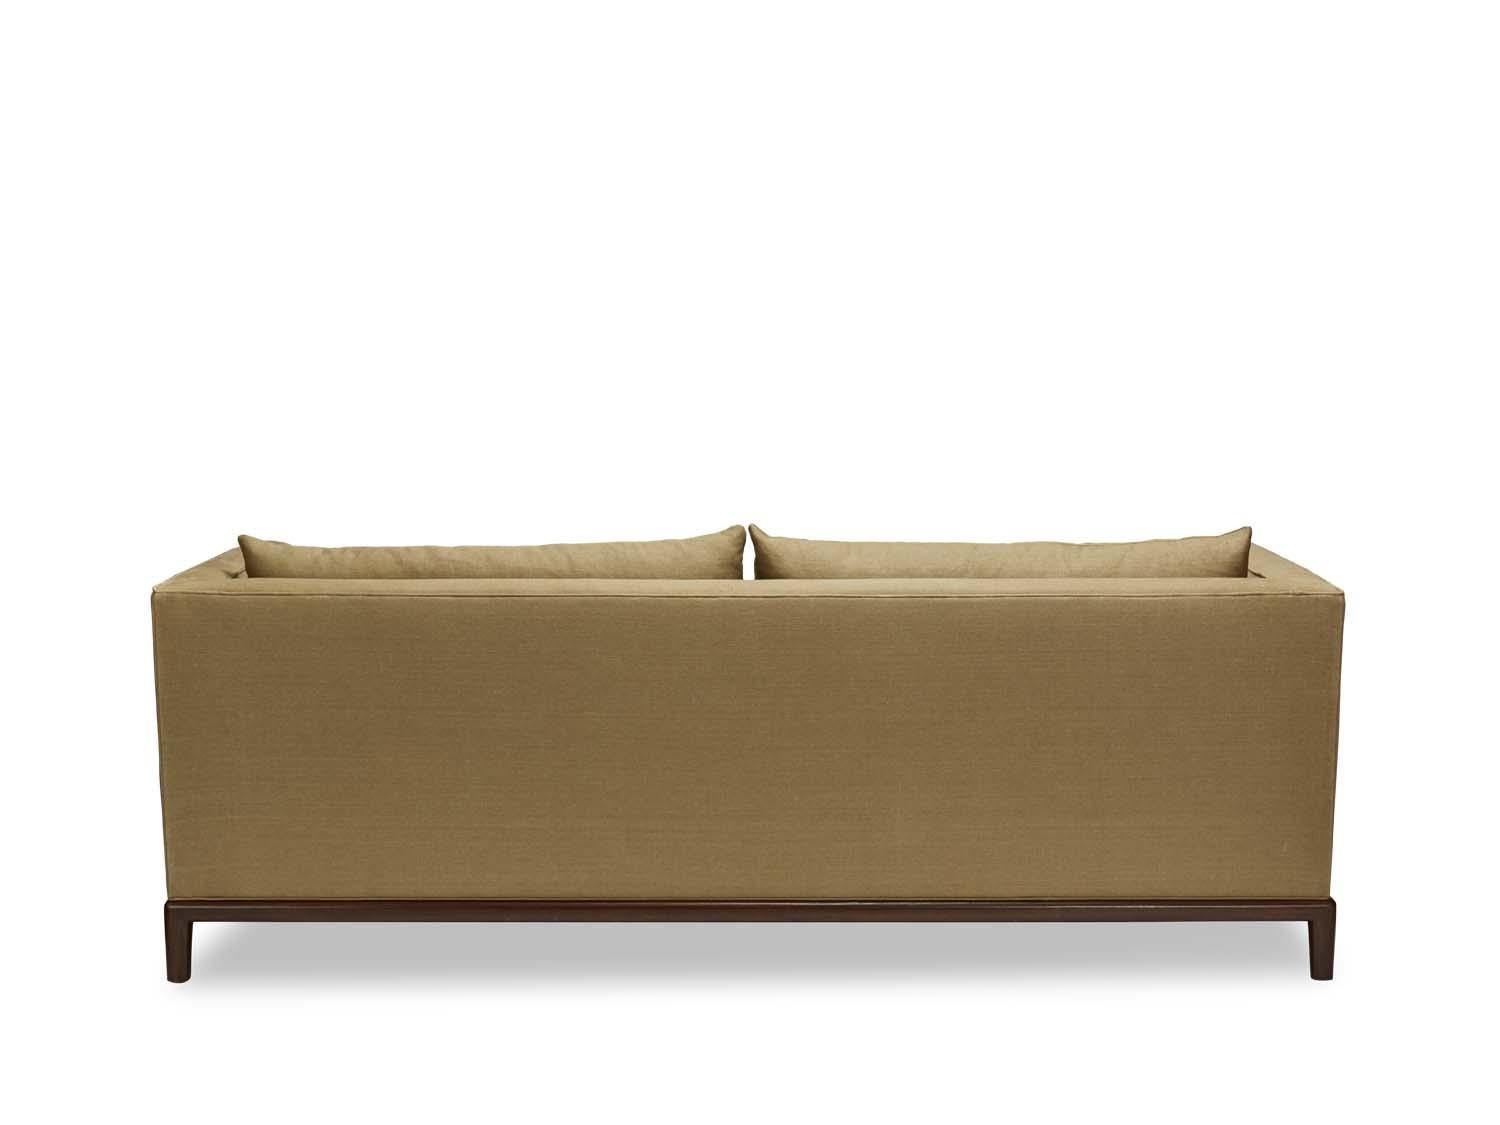 American Franklin Sofa by Lawson-Fenning